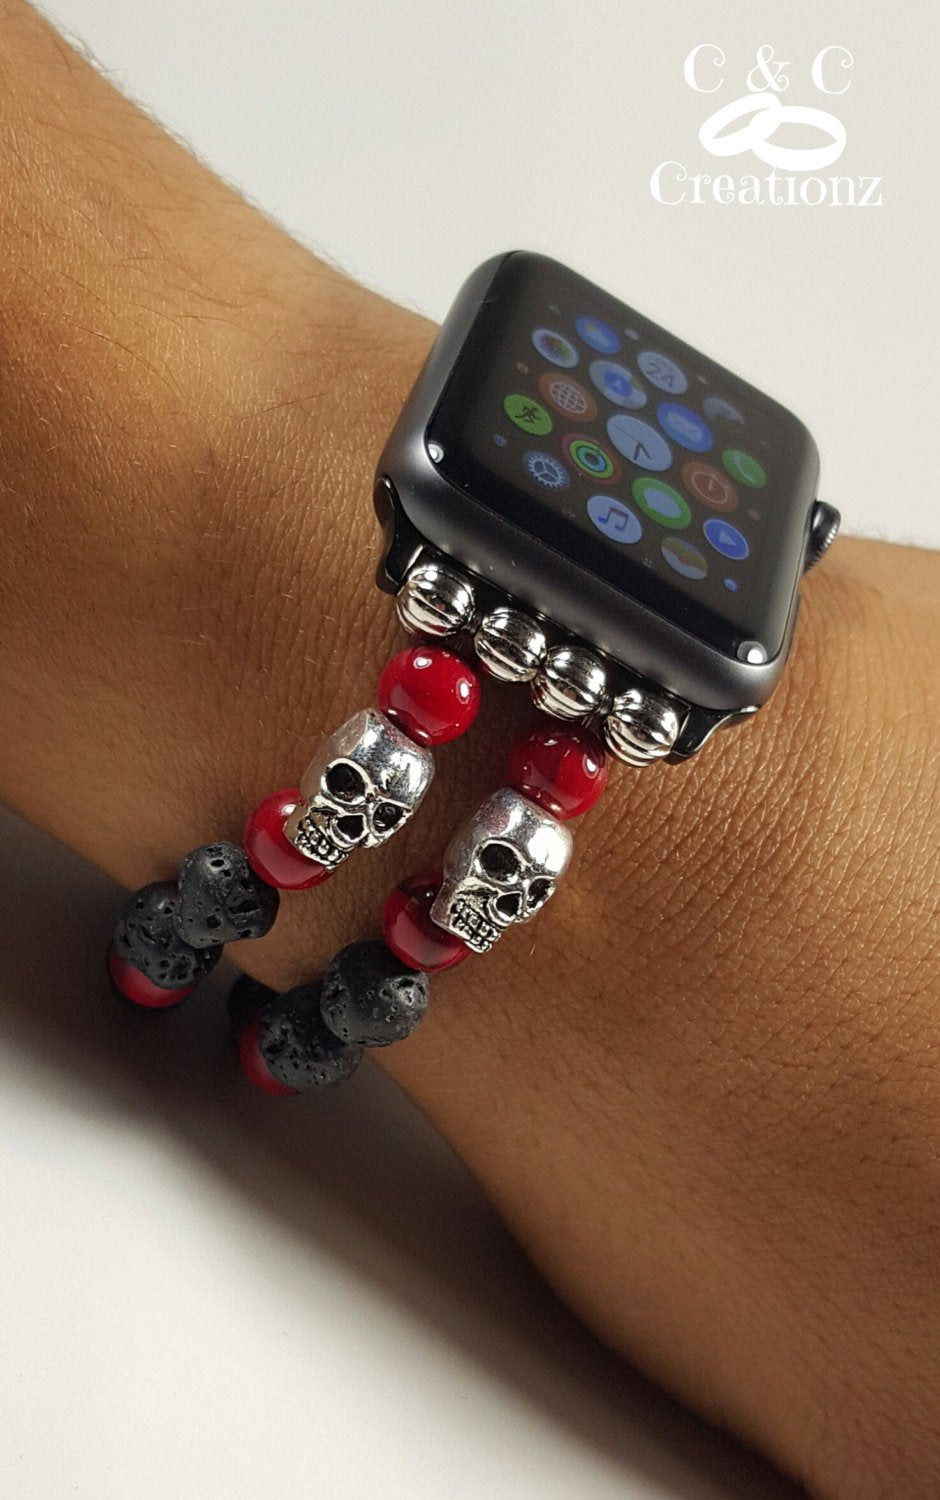 Designer Apple Watch Bands – Bedazzle Baddie